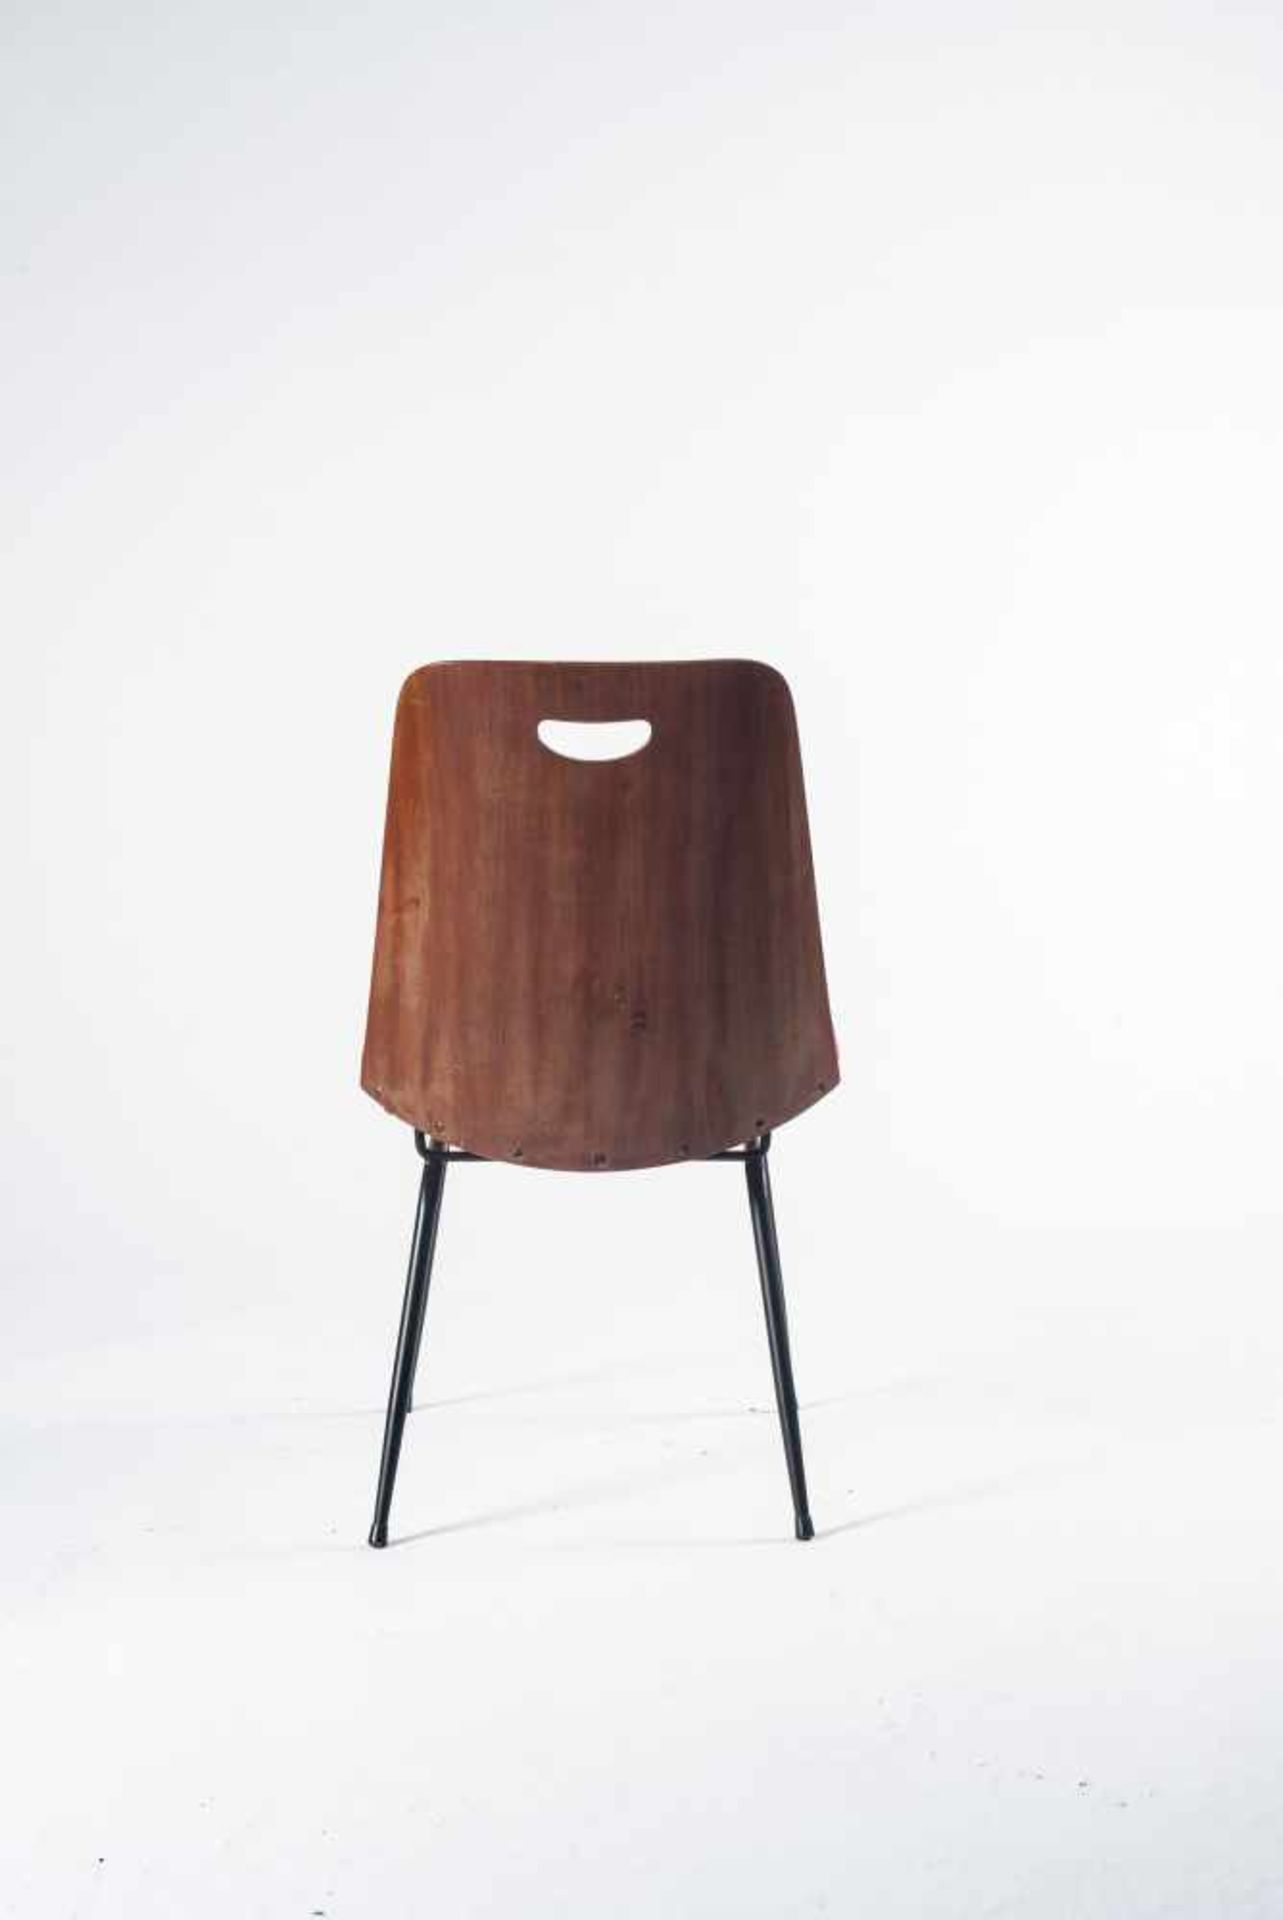 Vier Stühle 'Du 22', um 1952 Gastone Rinaldi H. 80 x 50 x 60 cm. Rima, Padua. Stahlrohr, schwarz - Bild 6 aus 8